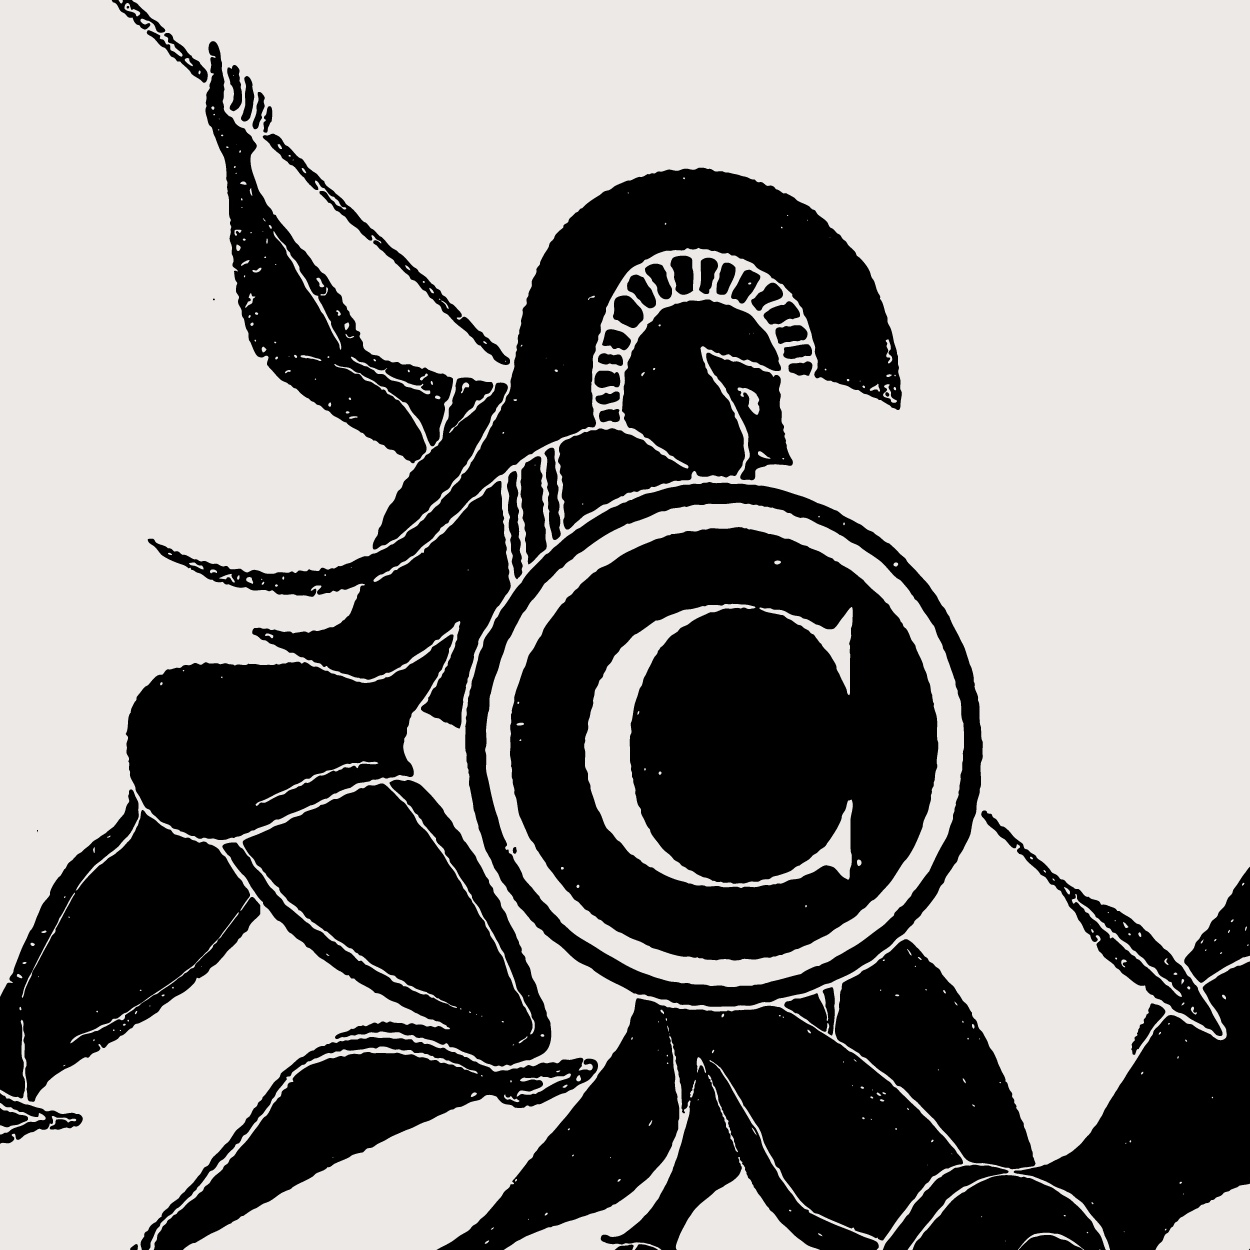 Bild: «The Battle of Copyright» im Stil einer griechisch-antiken Malerei